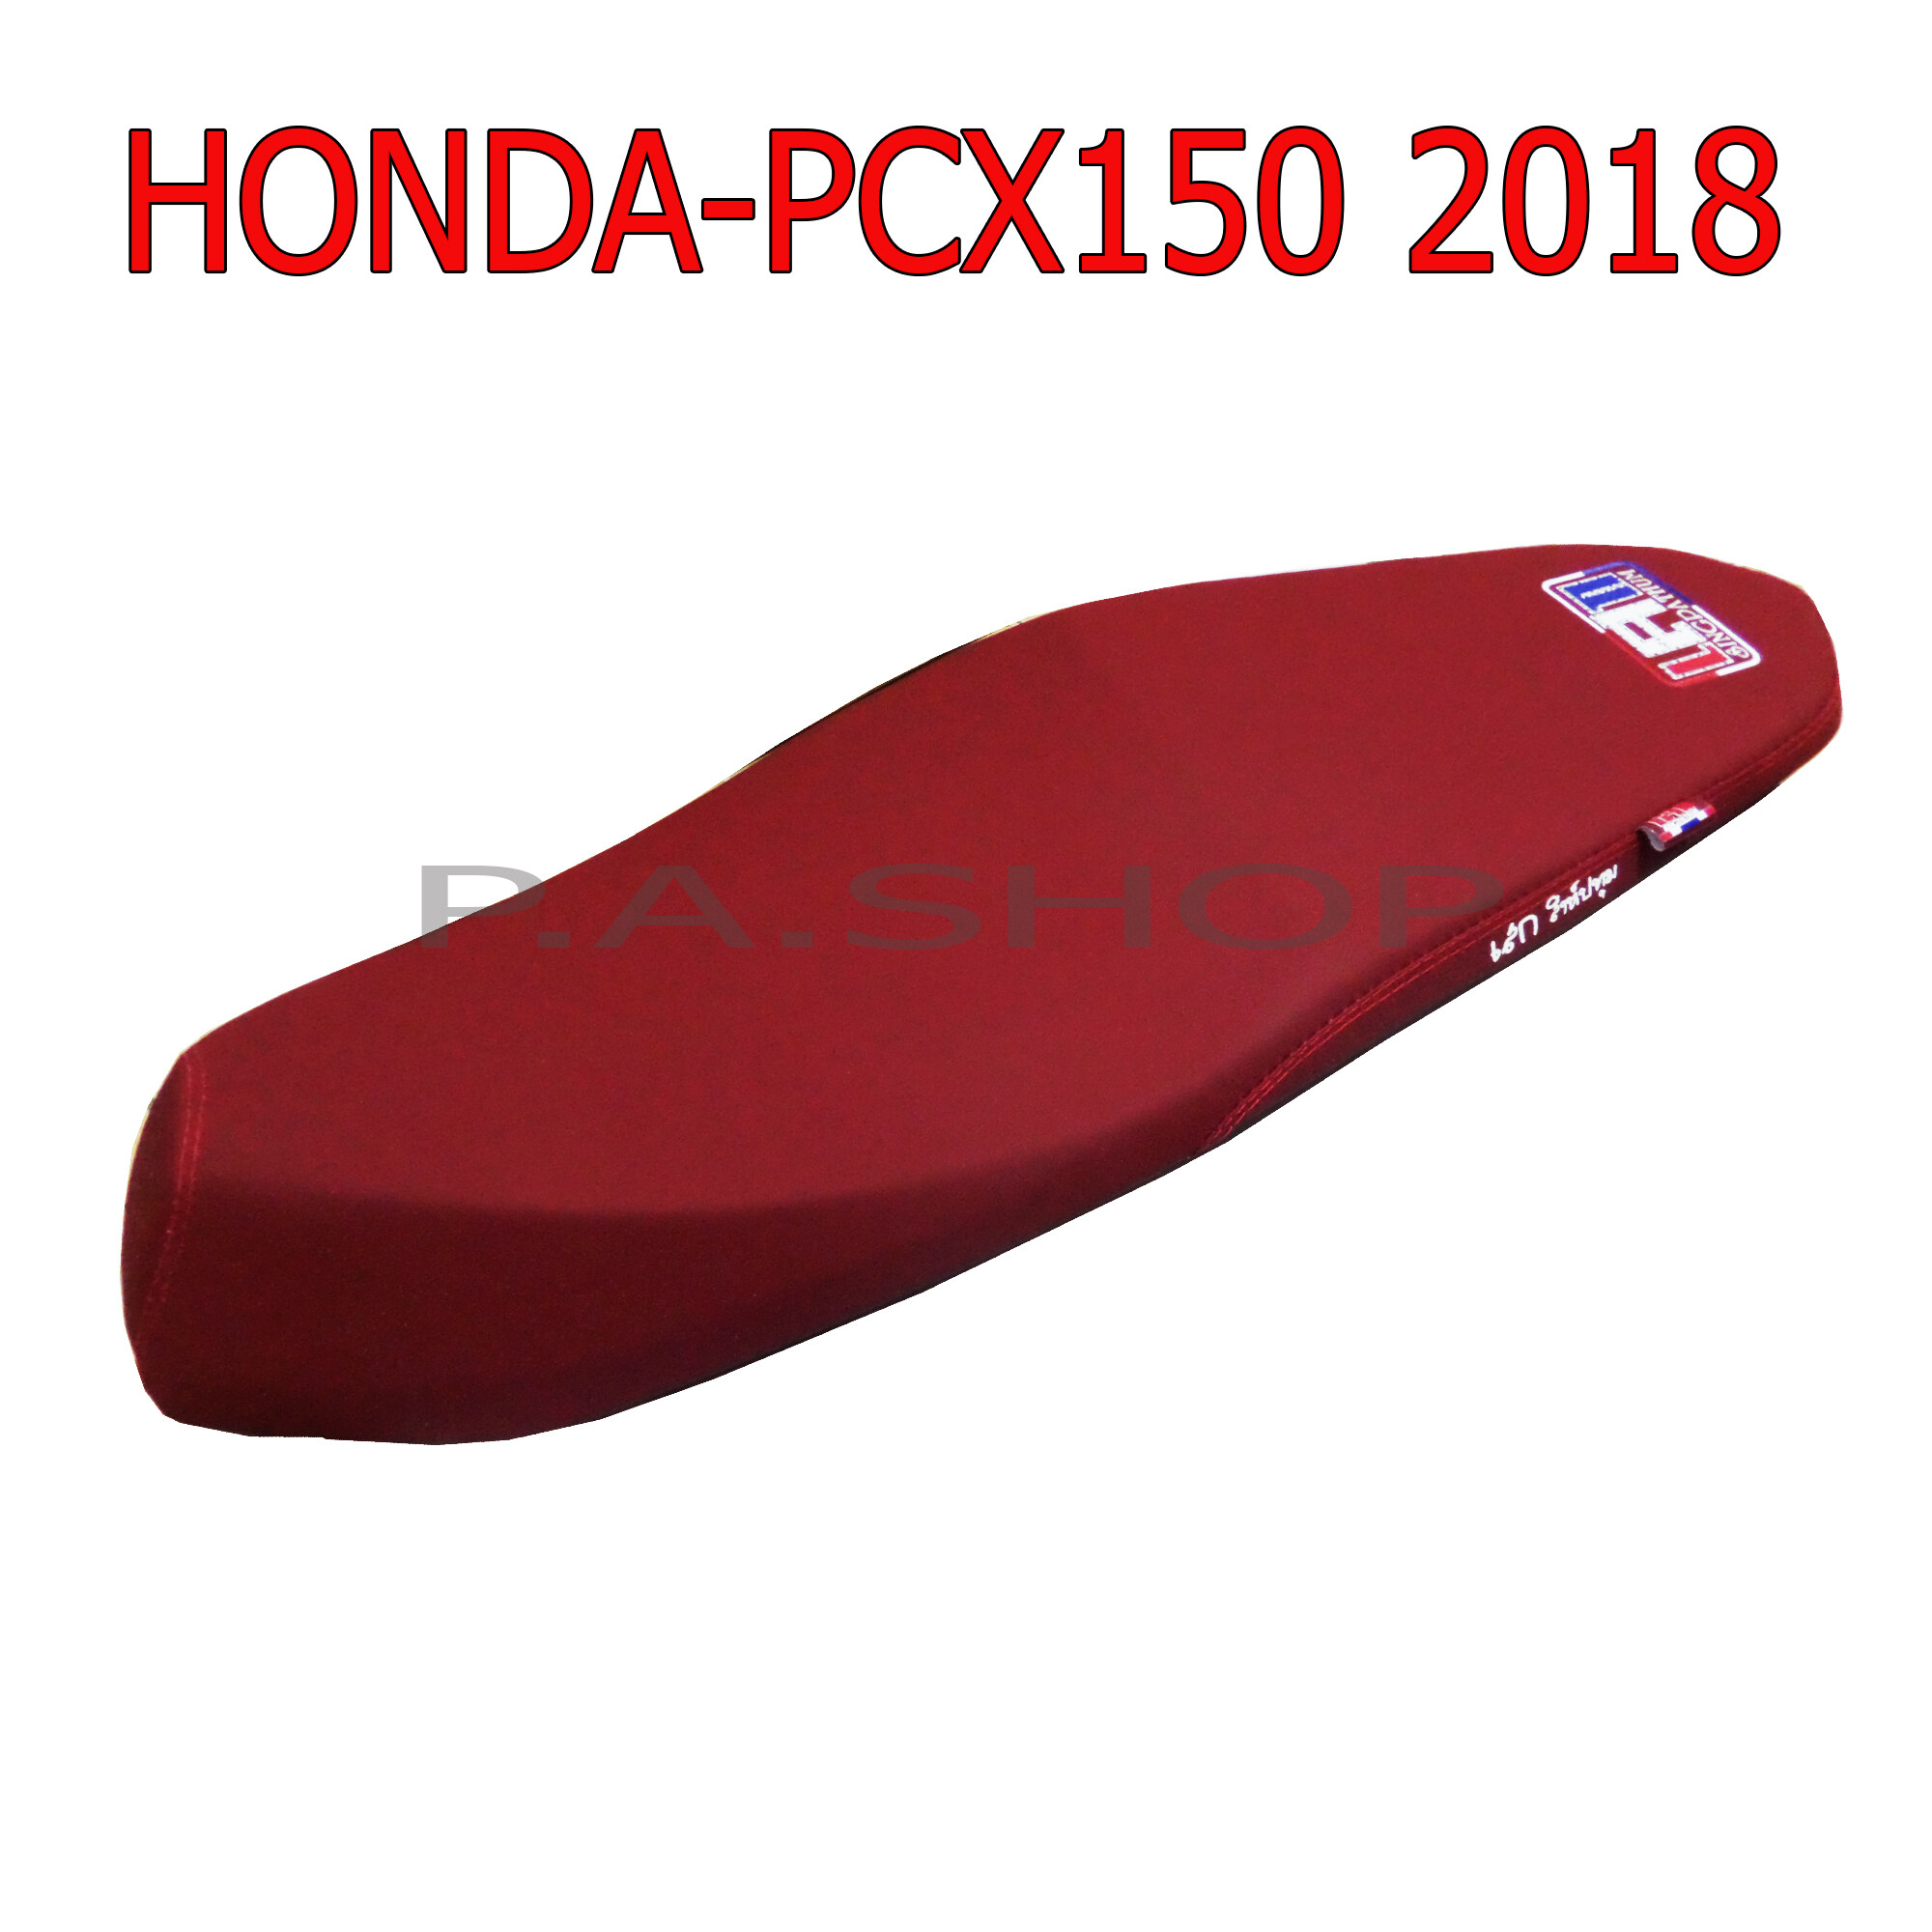 NEW เบาะแต่ง เบาะปาด เบาะรถมอเตอร์ไซด์สำหรับ HONDA-PCX150 ปั 2018-19 หนังด้าน ด้ายแดง  สีแดง งานเสก